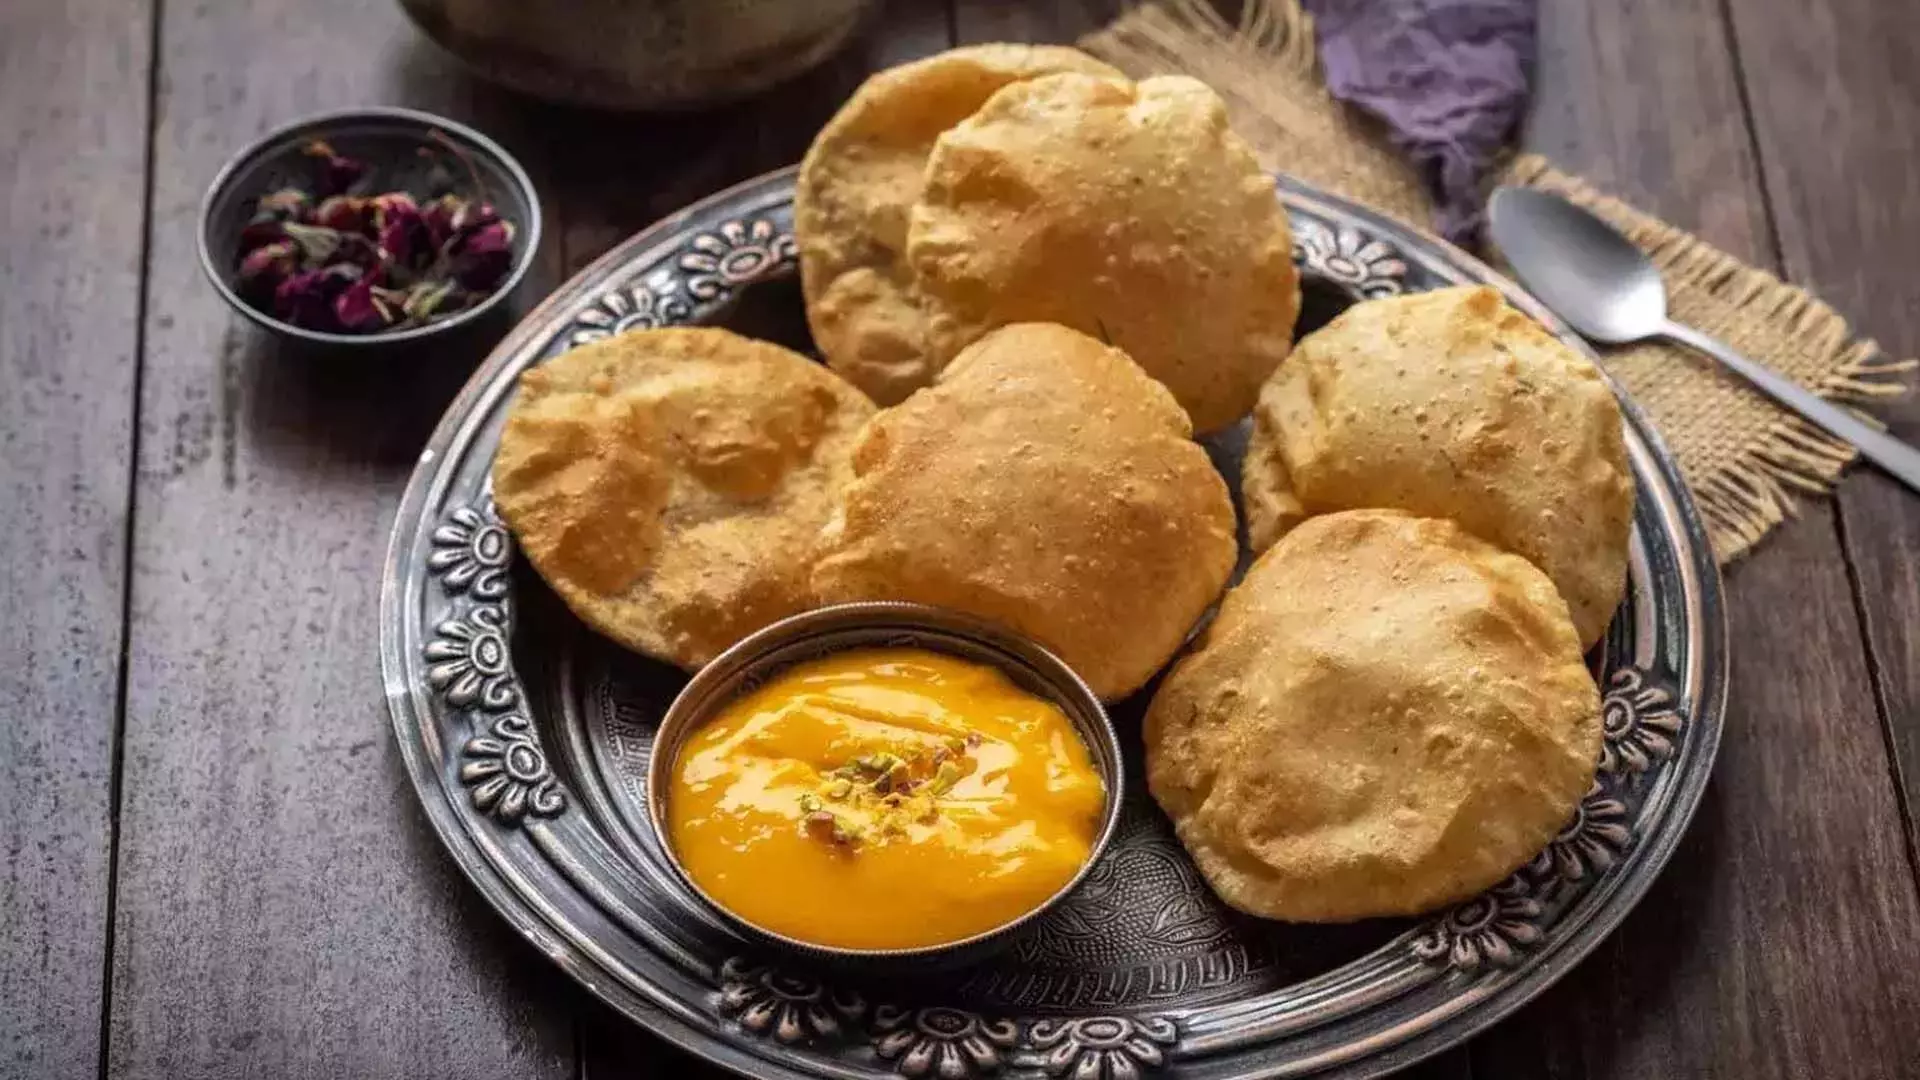 दिन की स्वादिष्ट शुरुआत के लिए 7 मीठे भारतीय नाश्ते